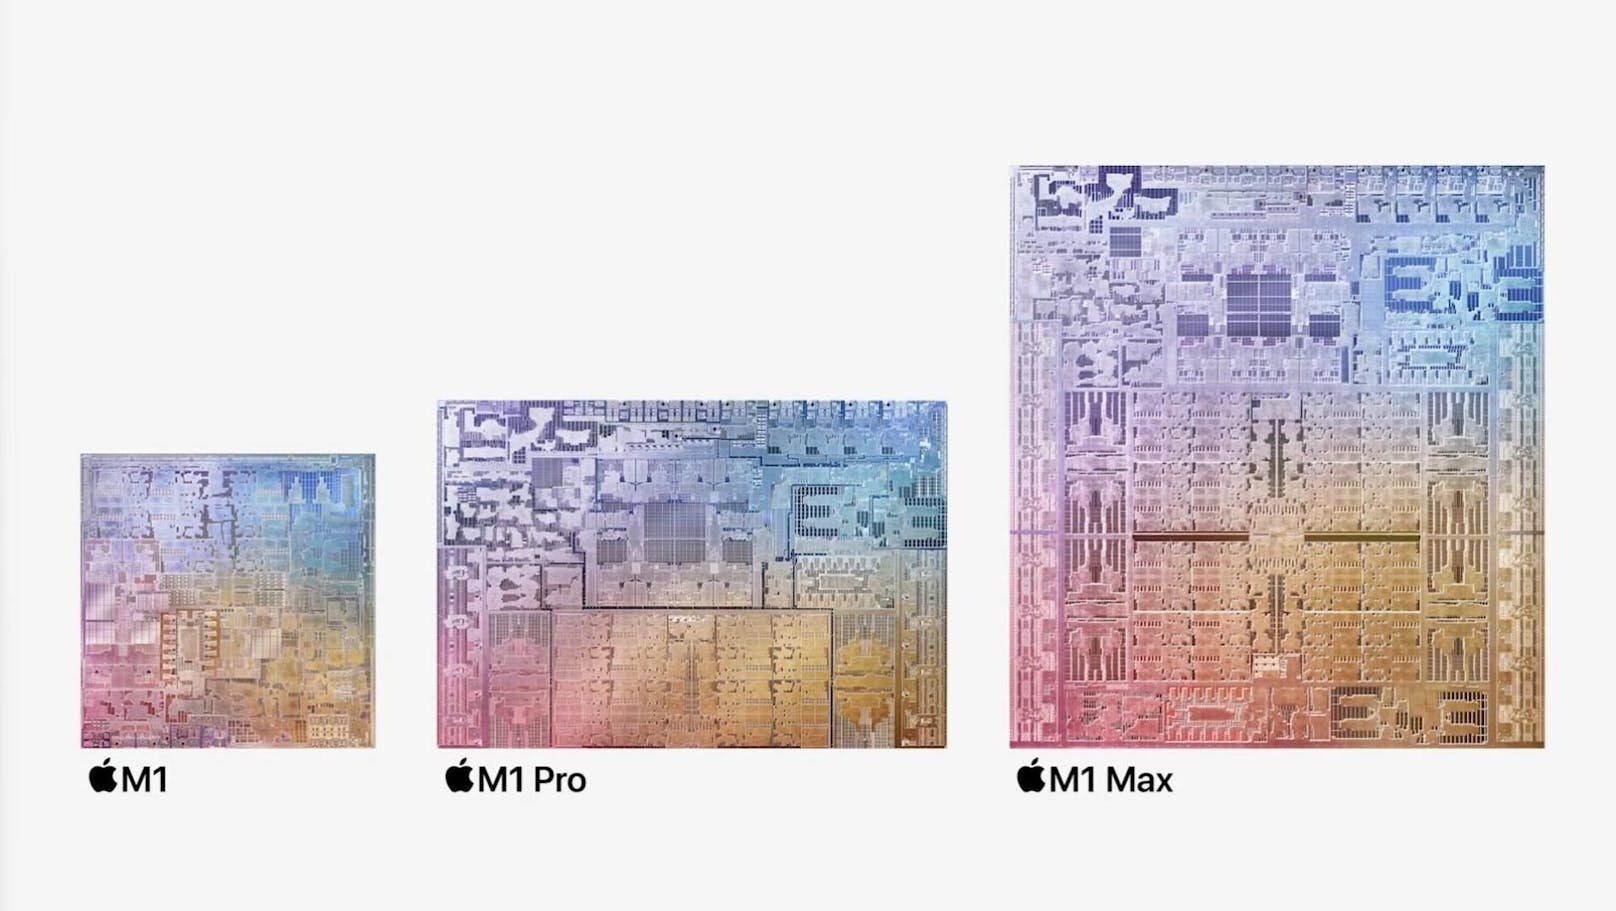 Weiter ging es mit dem M1-Chip von Apple. Dieser wurde weiterentwickelt. Der M1 Pro ist noch leistungsfähiger als sein Vorgänger. Auch gibt es einen neuen M1-Max-Prozessor.